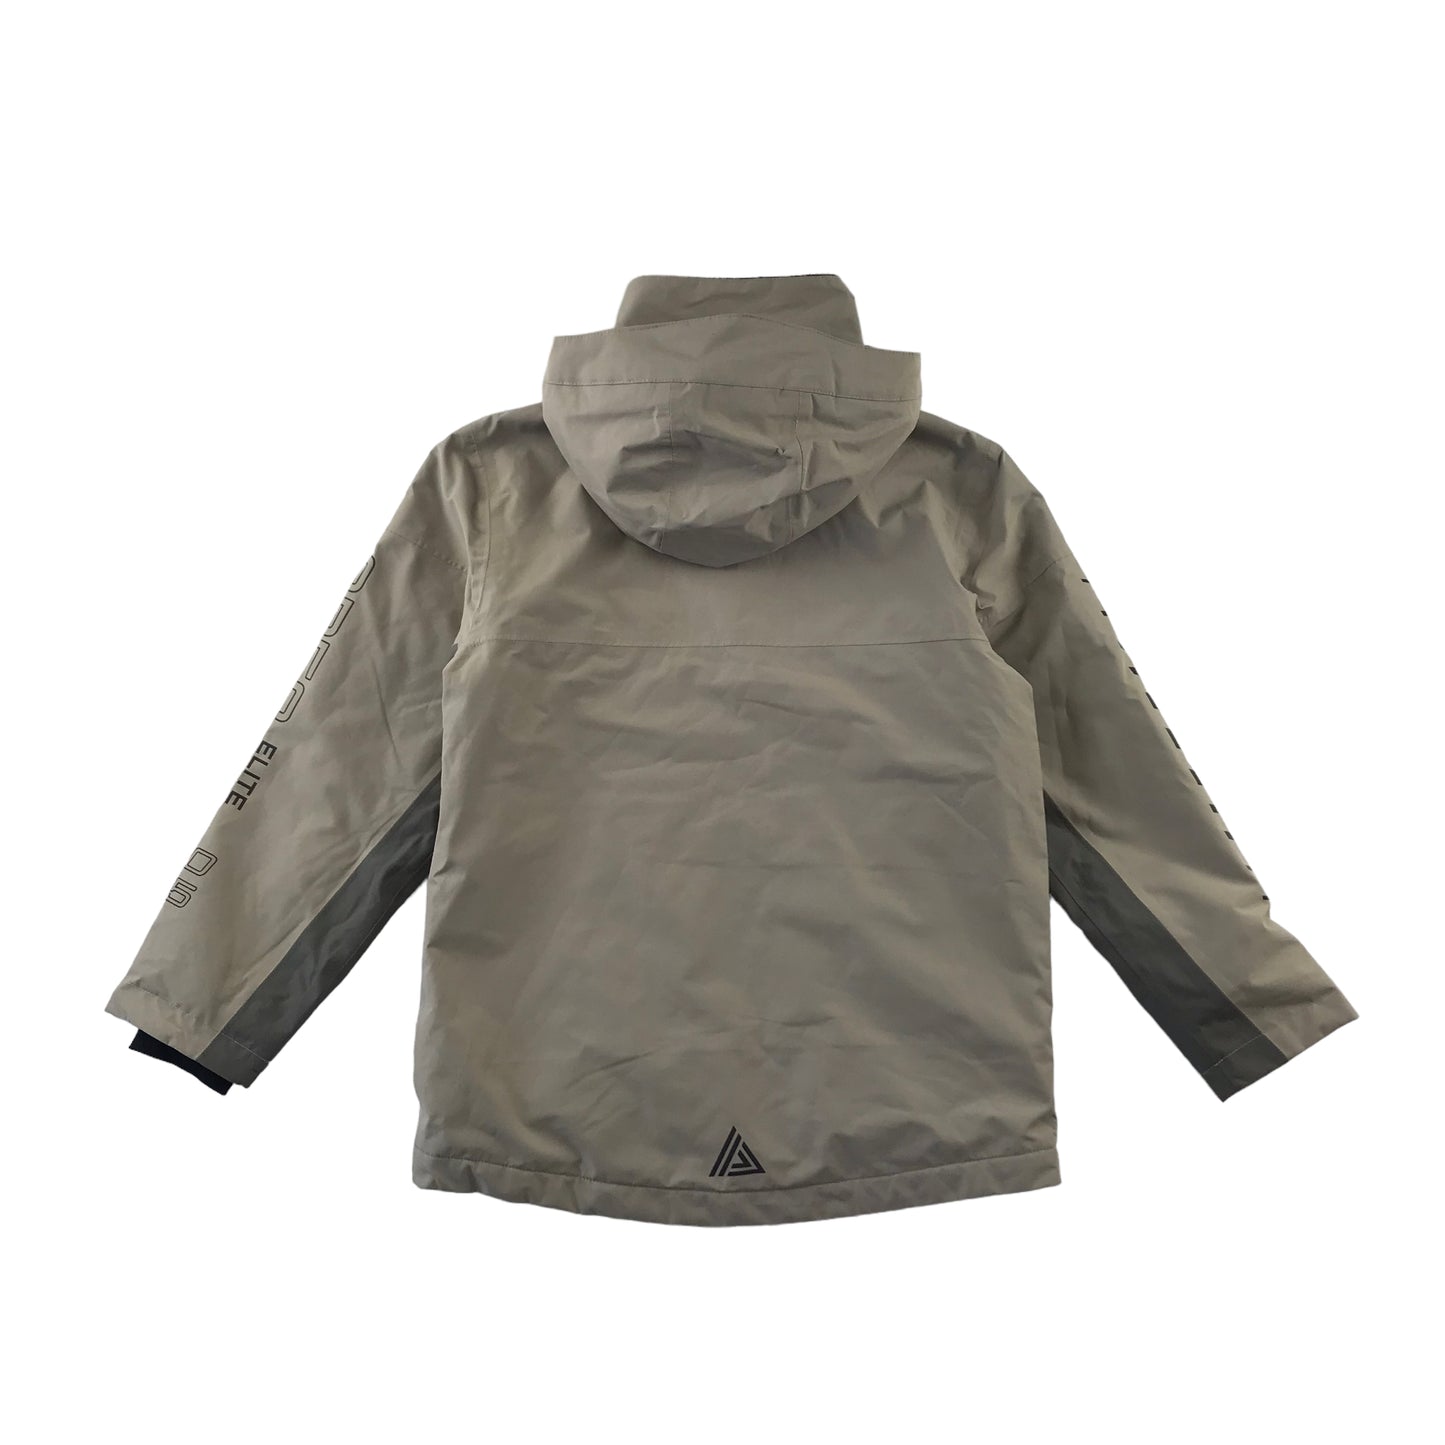 Next Jacket Age 9 Light Beige Fleece Lined Waterproof Windbreaker